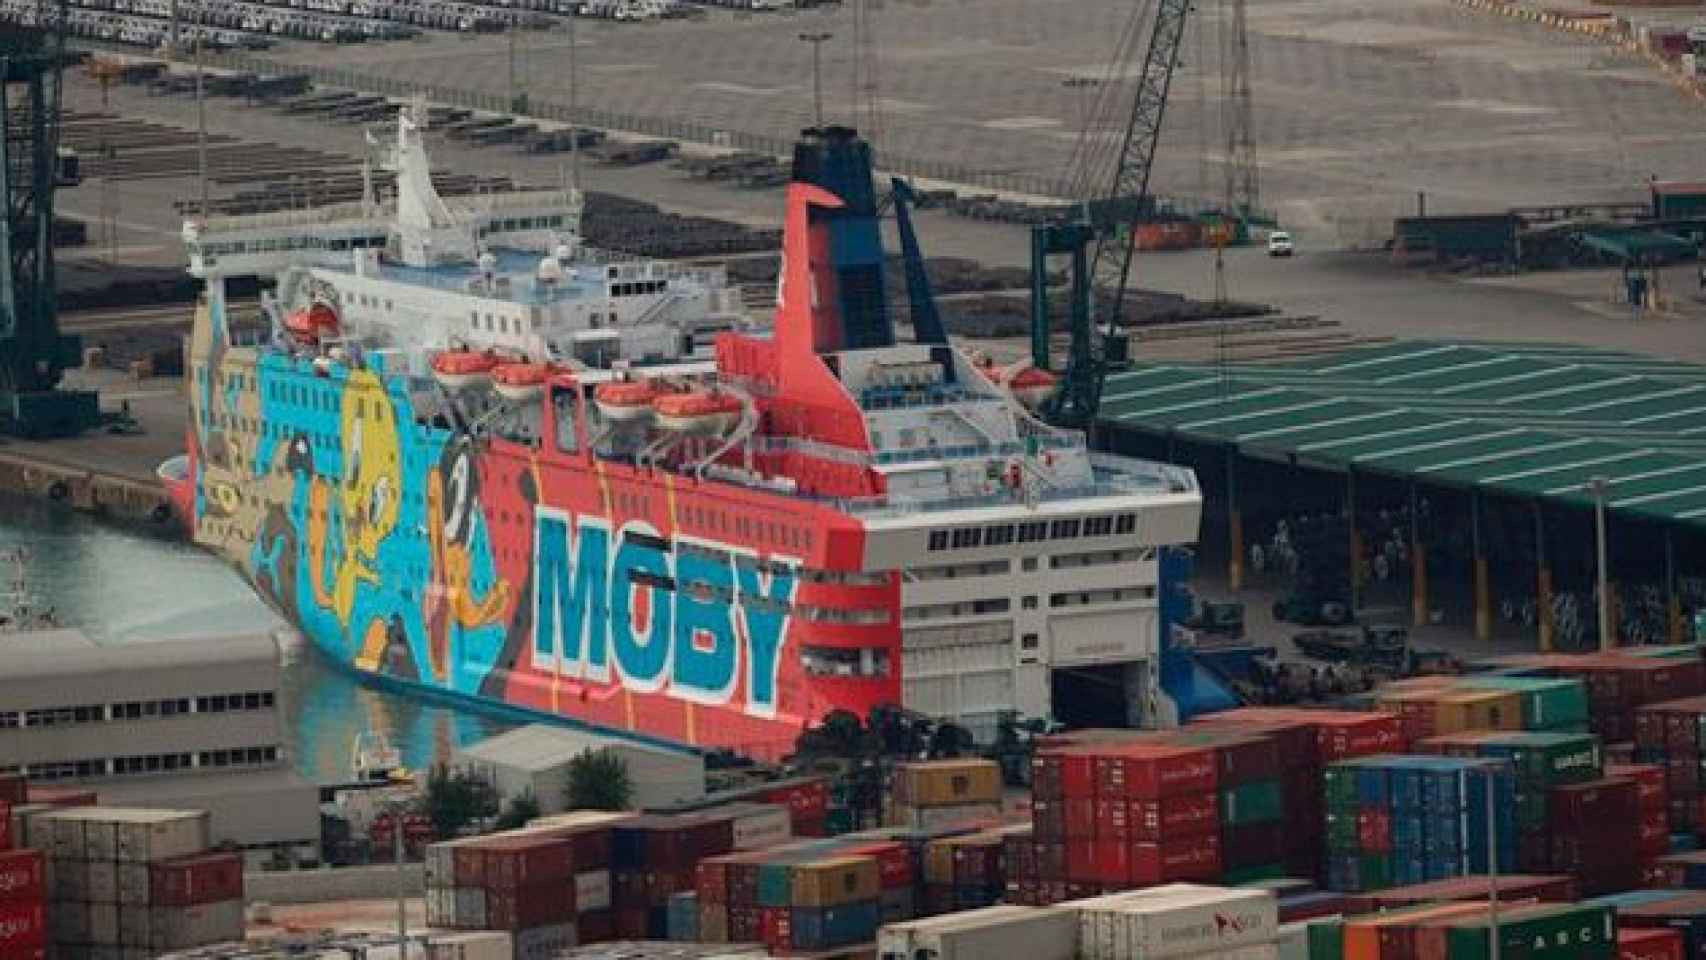 El Moby Dada, uno de los barcos de refuerzo policial en Cataluña / EP